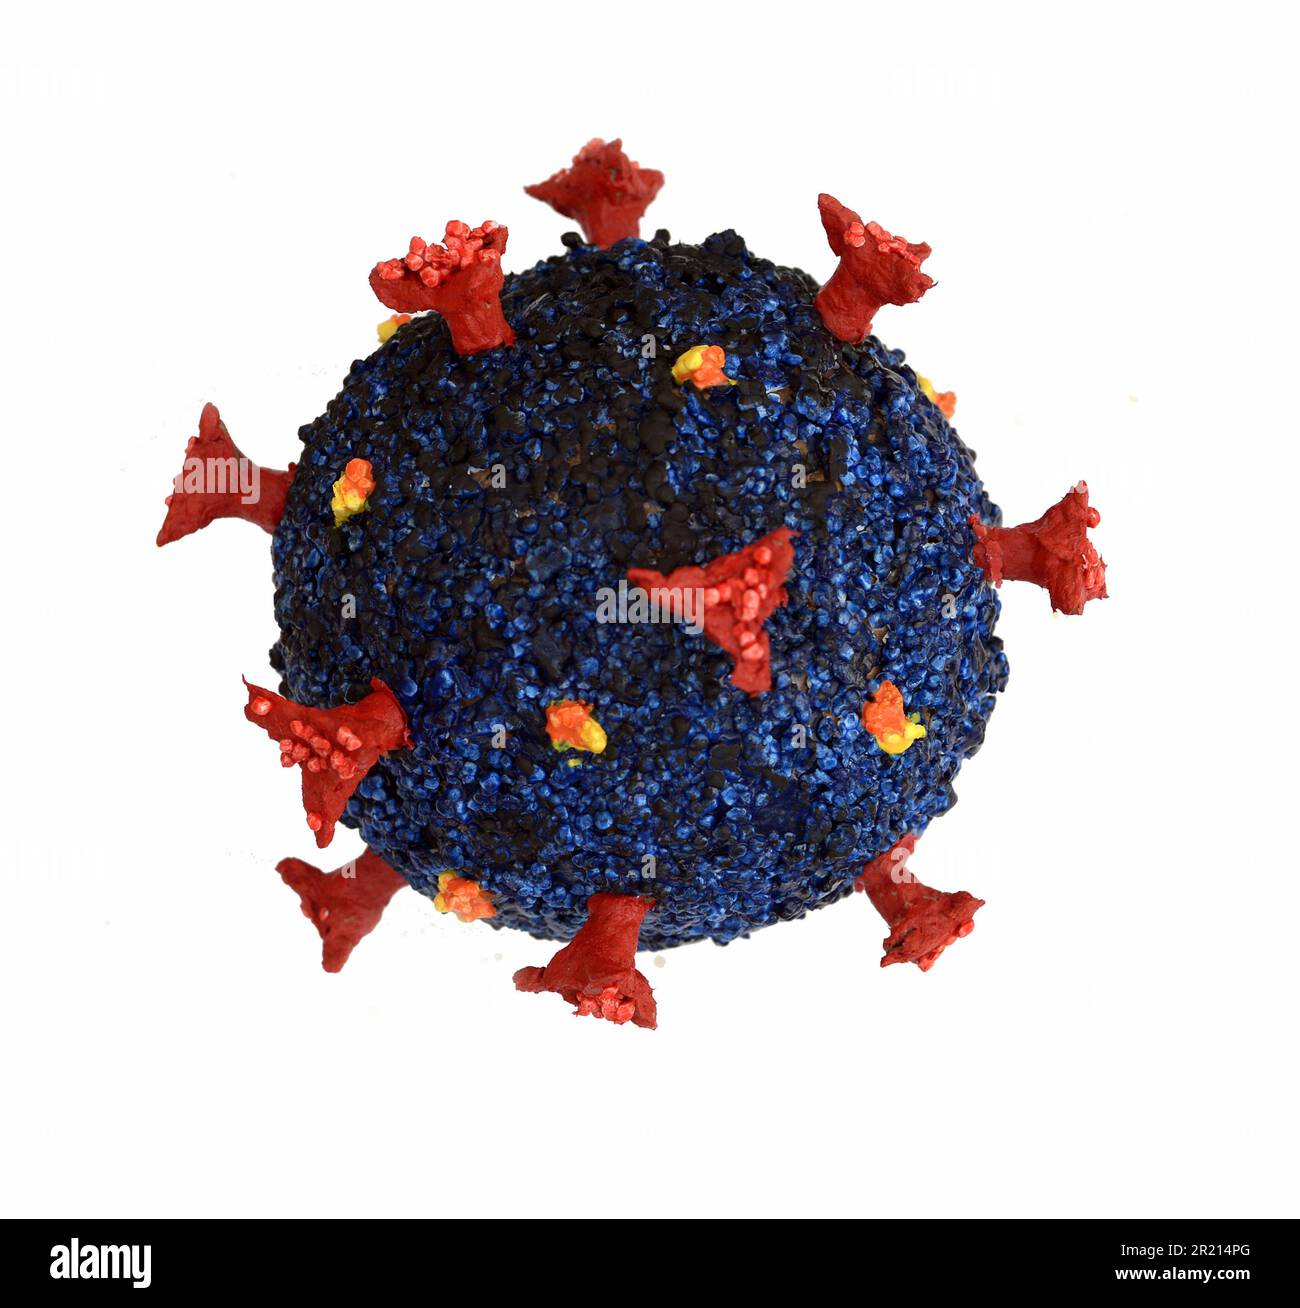 Un modèle du coronavirus du COV-SRAS-2 qui cause la maladie COVID-19. Le COV-SRAS-2 est un virus de l'espèce coronavirus lié au syndrome respiratoire aigu sévère (SARSR-COV). On croit qu'il est d'origine zoonotique et qu'il présente une similarité génétique étroite avec les coronavirus des chauves-souris, ce qui suggère qu'il est apparu à partir d'un virus transmis par les chauves-souris. 2022. Banque D'Images